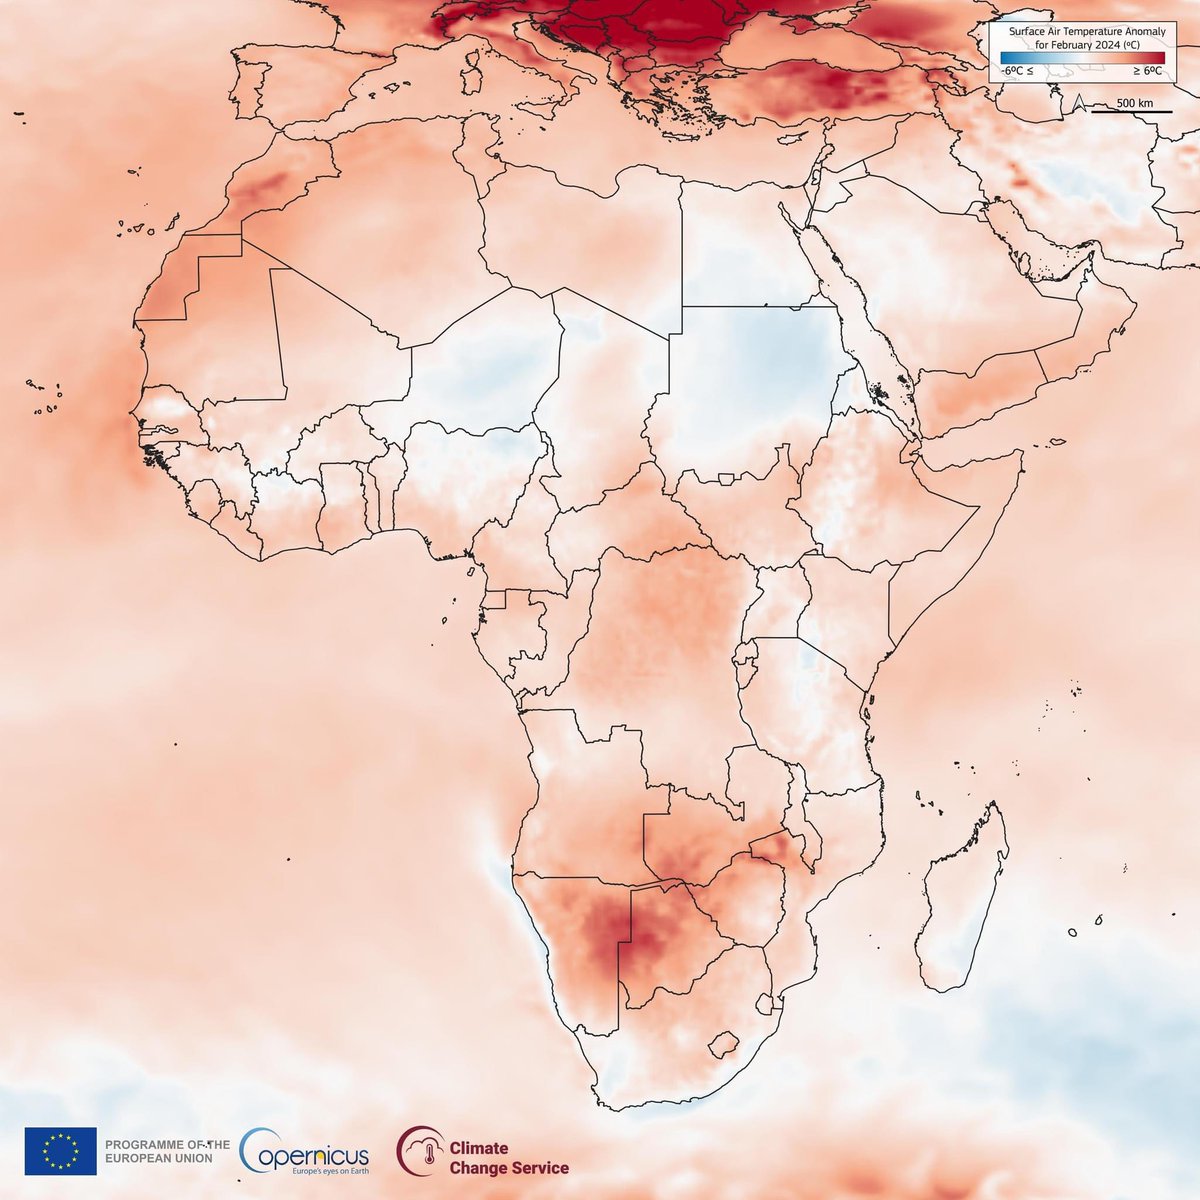 Afrika’da Şubat 2024’te -4 C’ derecelik sıcaklık anomalisi yaşanırken Avrupa’da + 6 C’ derecelik sıcaklık anomalisi yaşandı! 
ERA 5 veri seti, CopernicusClimate dünya çapındaki iklim aşırılıklarını izlemek için değerli bilgiler sağlar. #muglaweather